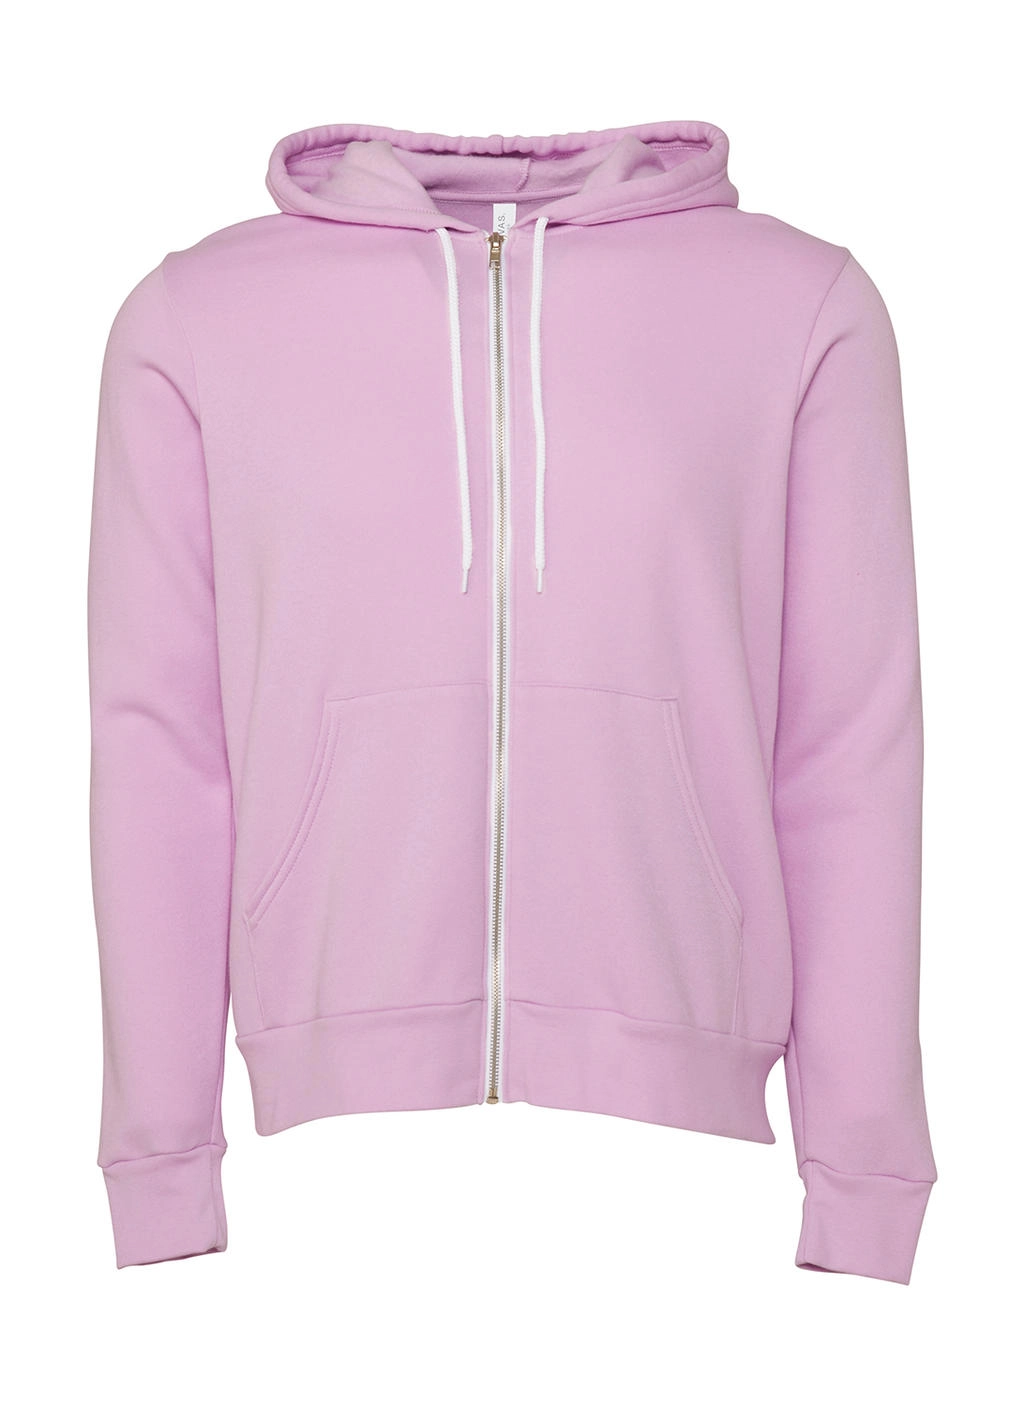 Unisex Poly-Cotton Full Zip Hoodie zum Besticken und Bedrucken in der Farbe Lilac mit Ihren Logo, Schriftzug oder Motiv.